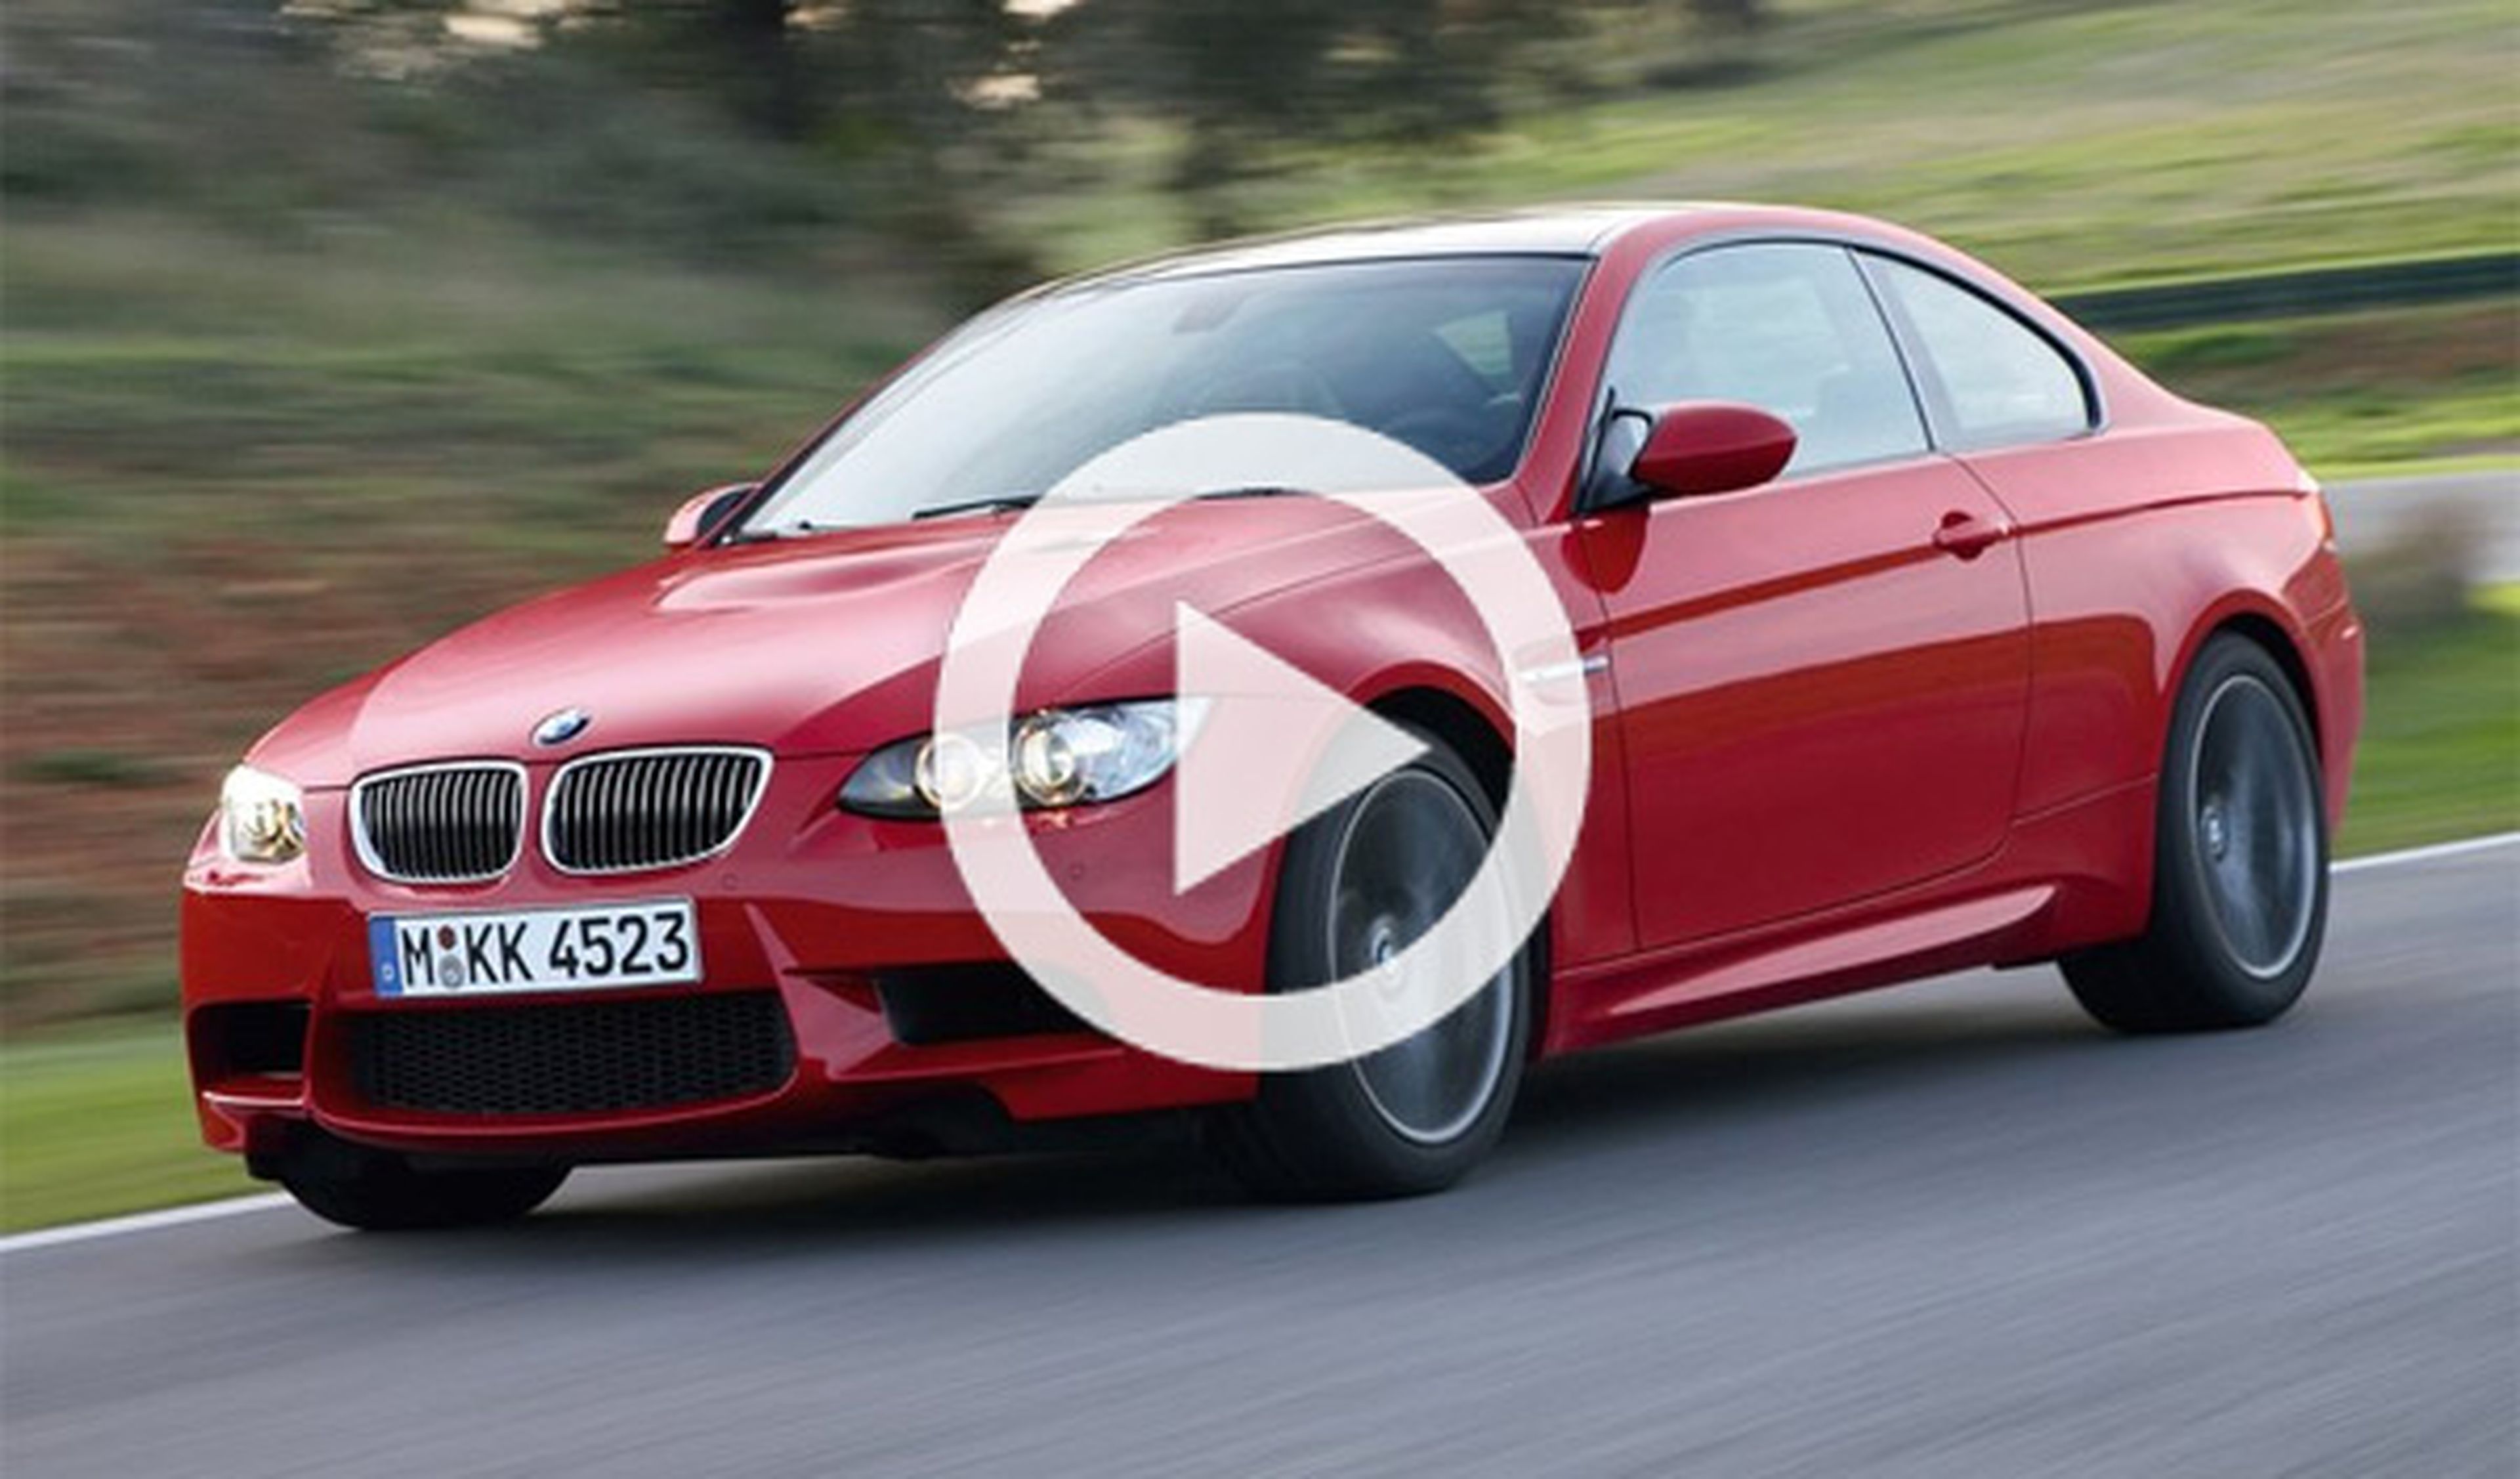 El BMW i3, contra el M3 E92. ¿Quién acelera mejor?